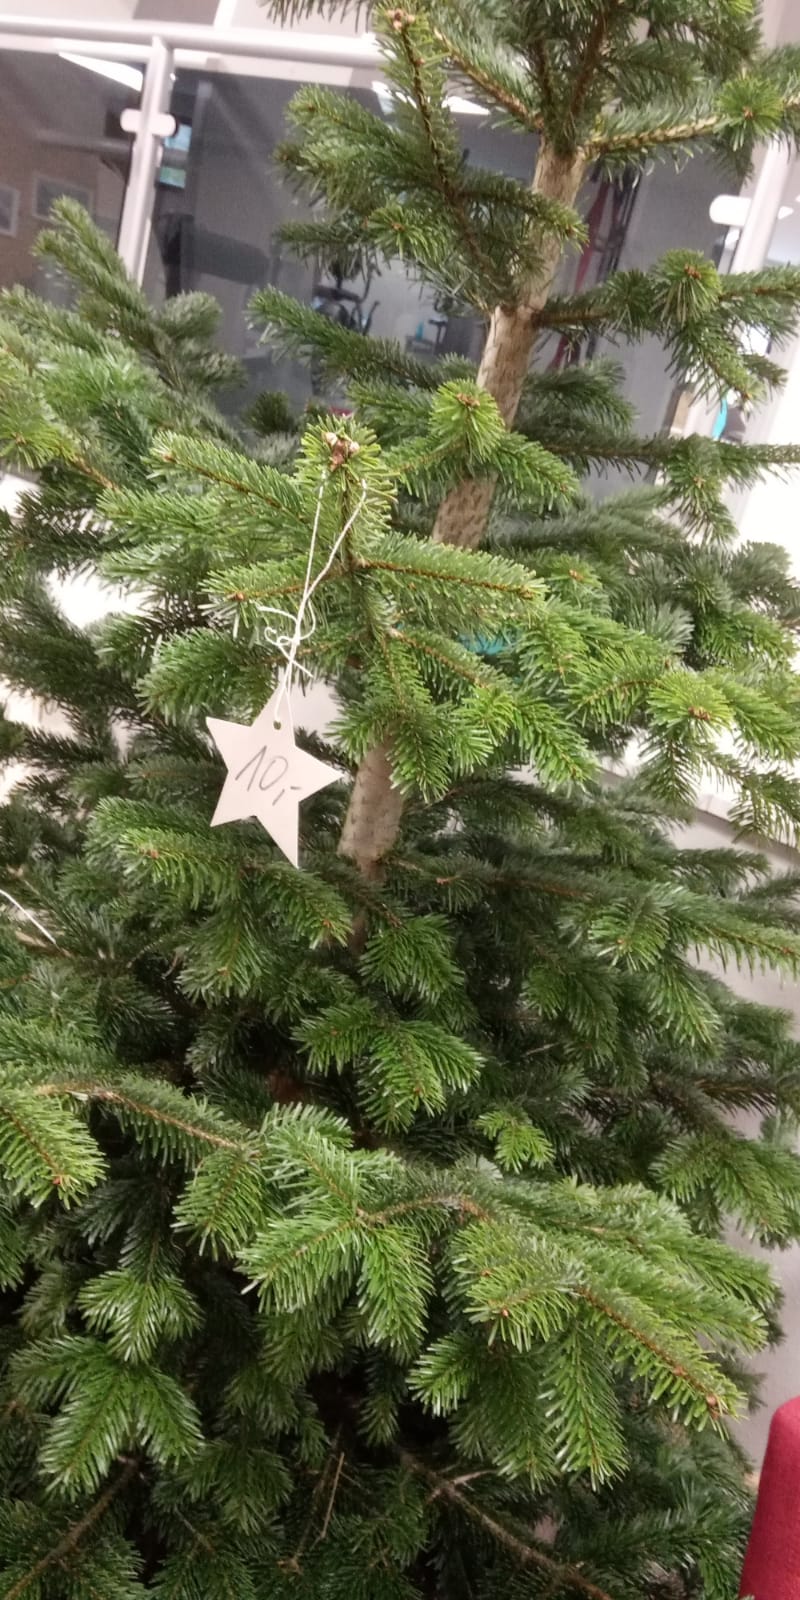 Die erste Spende an unserem Weihnachtsbaum 🎄